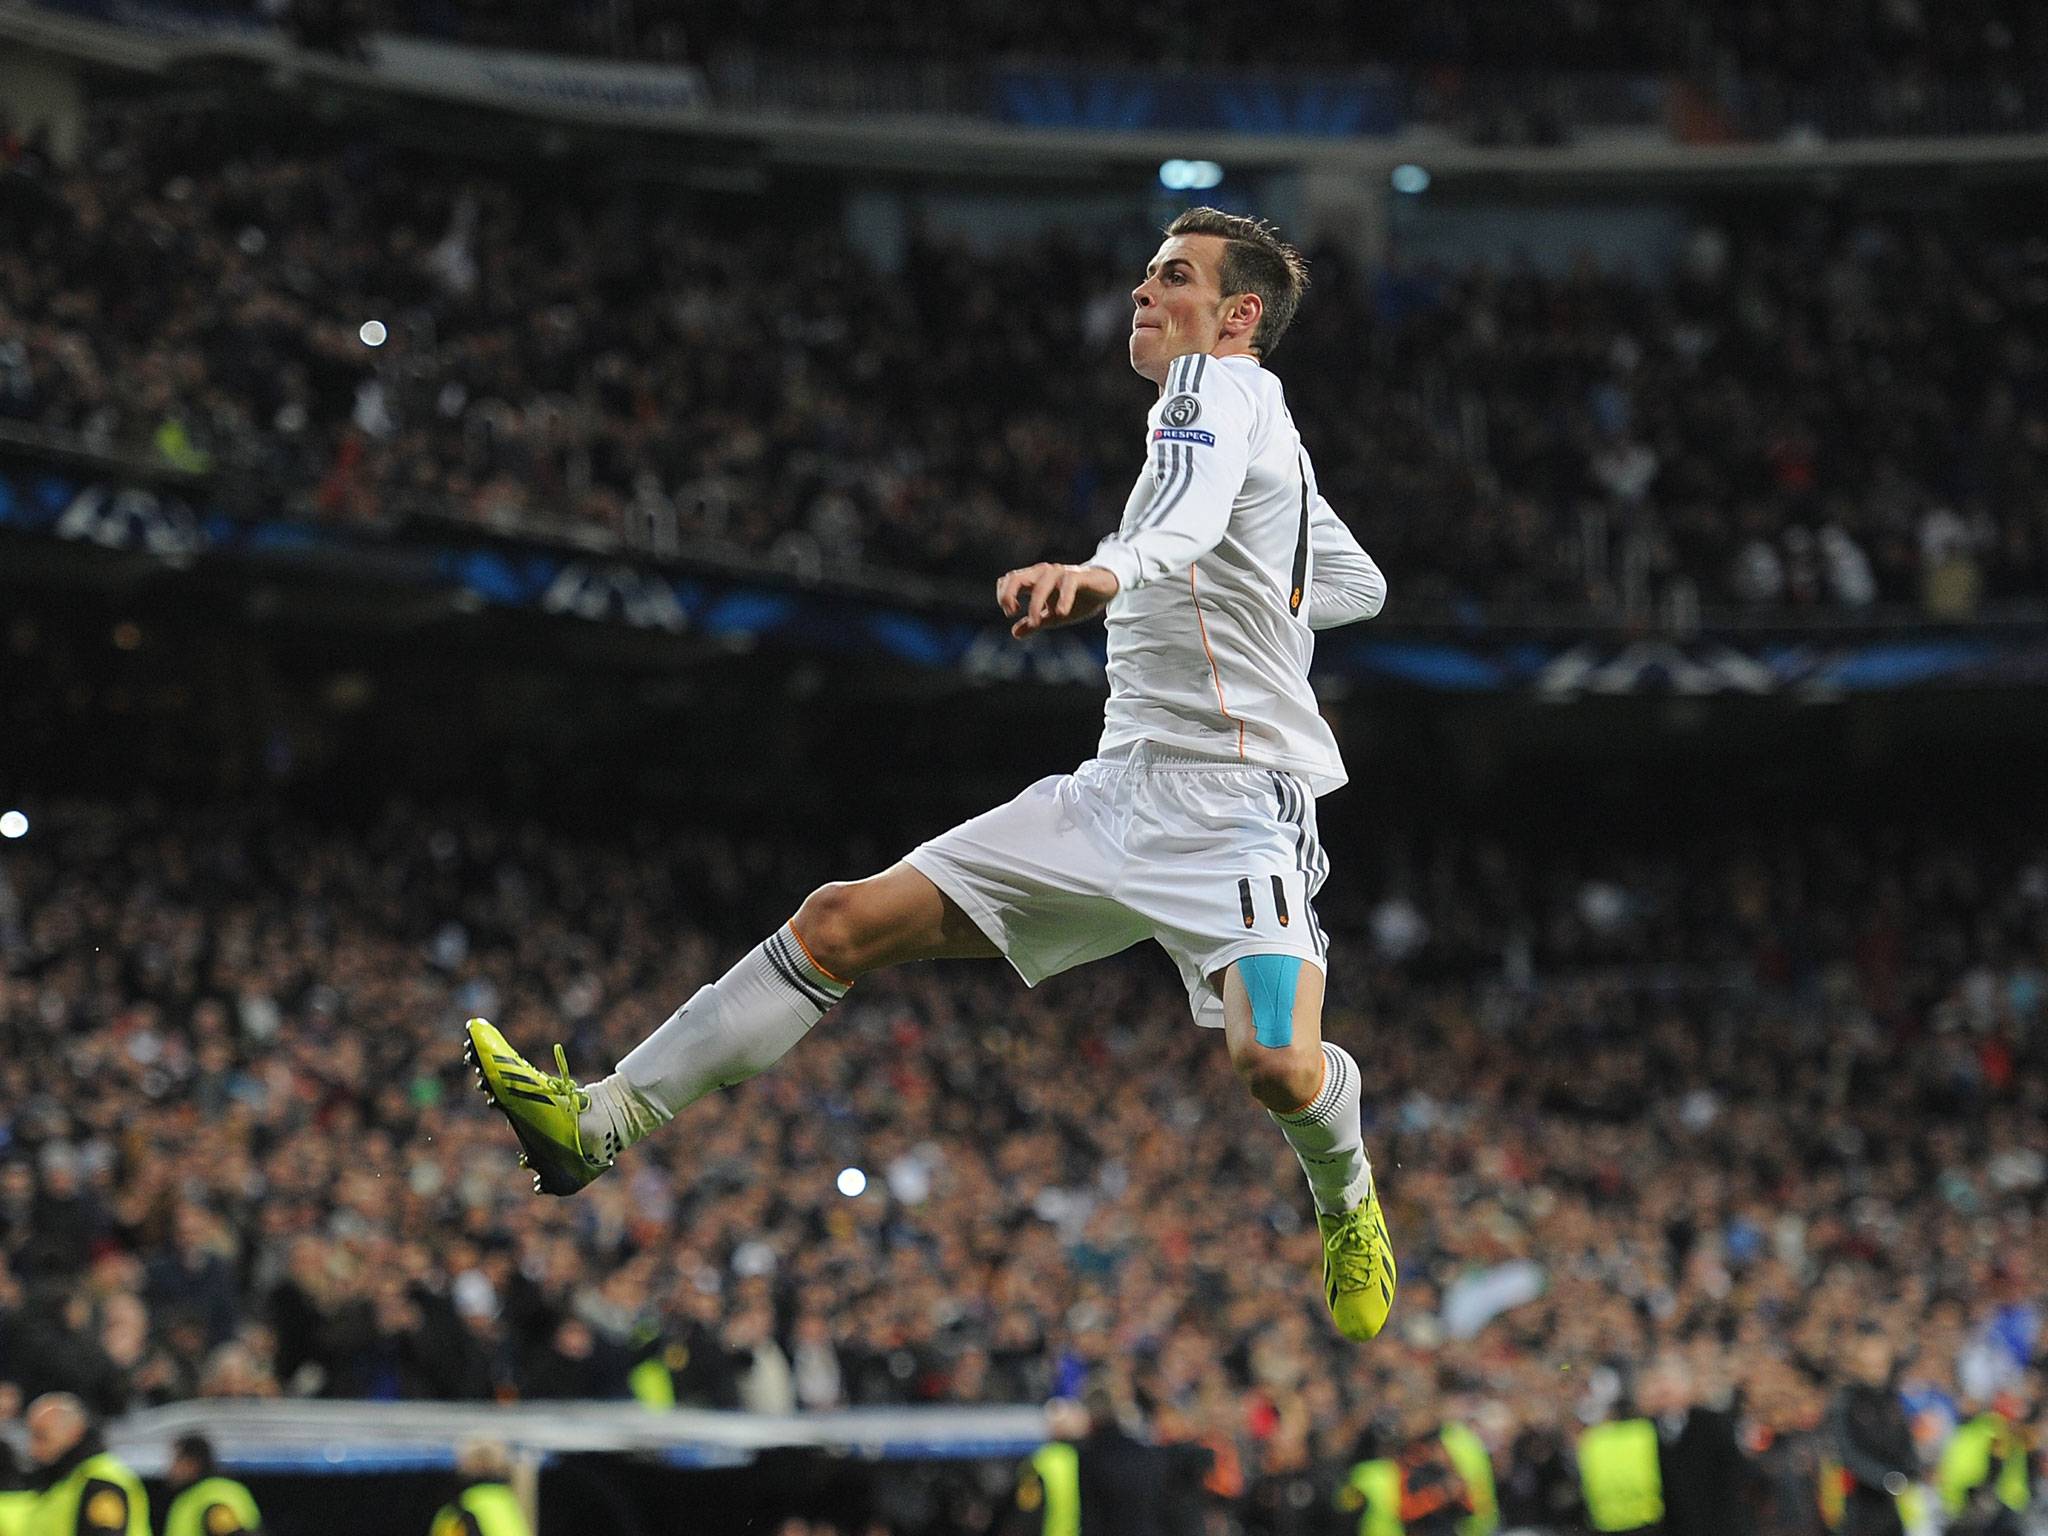 Gareth Bale Wallpaper, HD Gareth Bale Wallpaper. Download